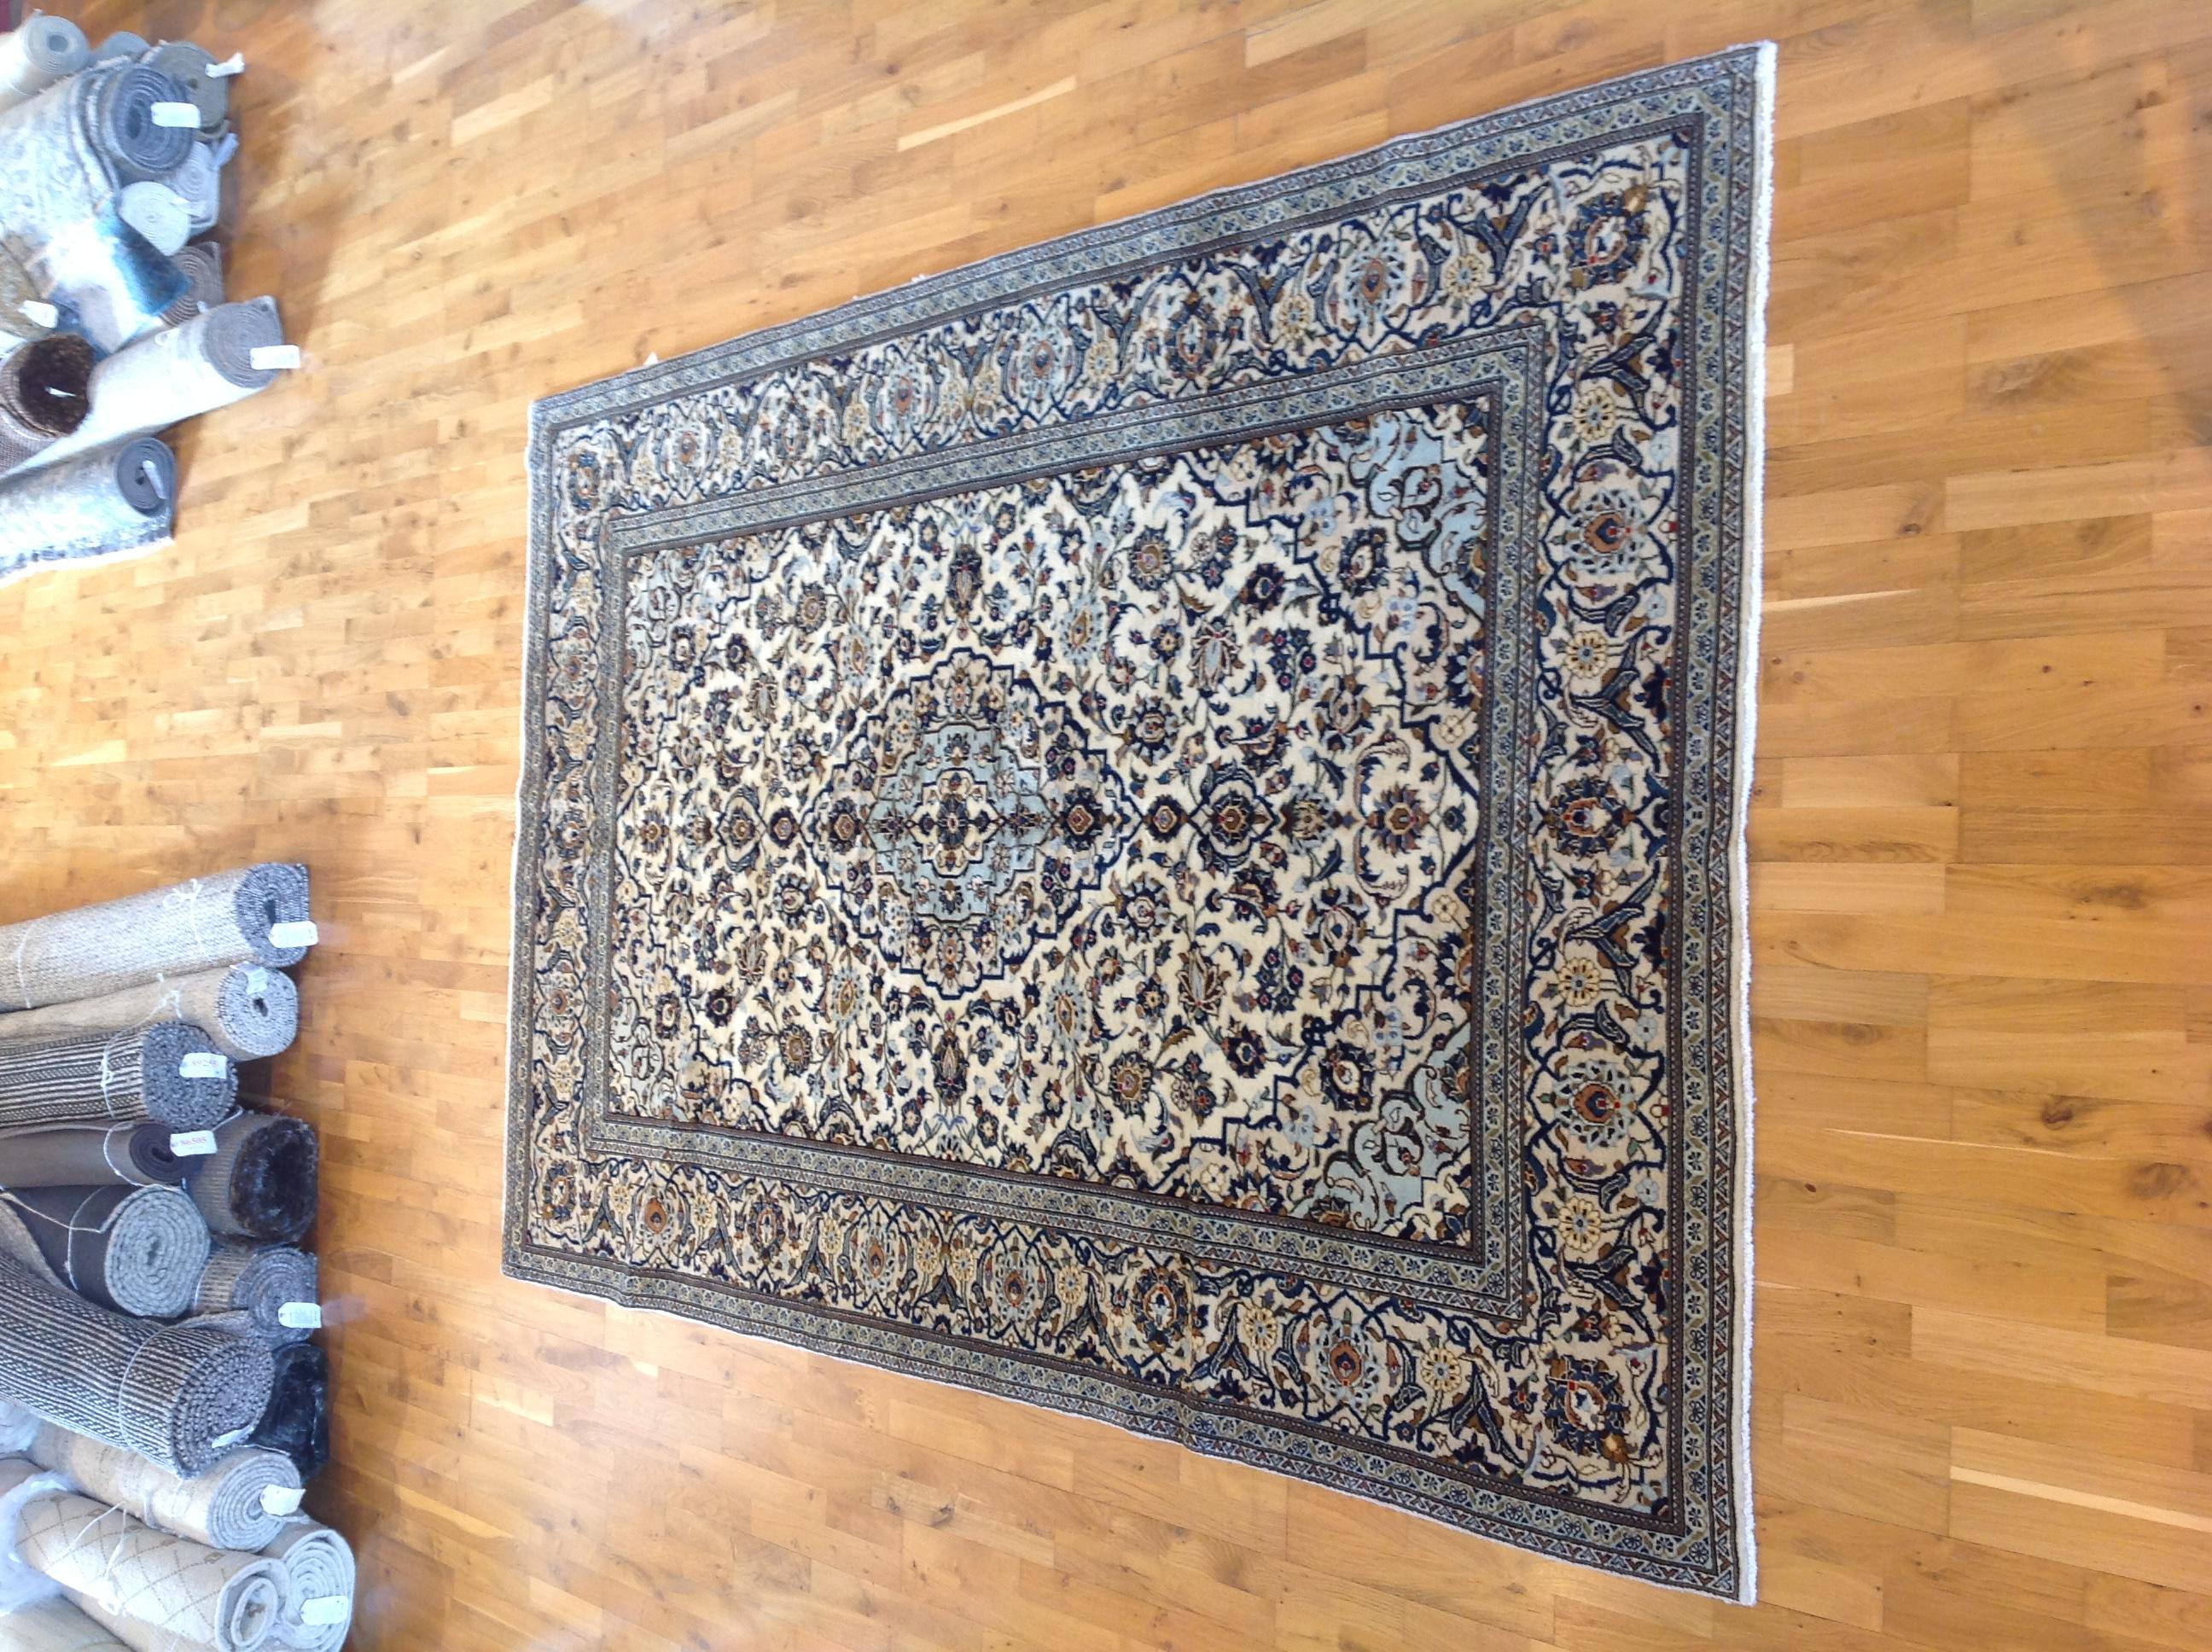 Verströmen Sie Eleganz und Raffinesse mit diesem vinatge Kashan-Teppich. Sein exquisites, aus reiner Wolle gefertigtes Design verleiht jedem Raum eine luxuriöse Note. Entdecken Sie die zeitlose Schönheit dieses Stücks, das den Test der Zeit